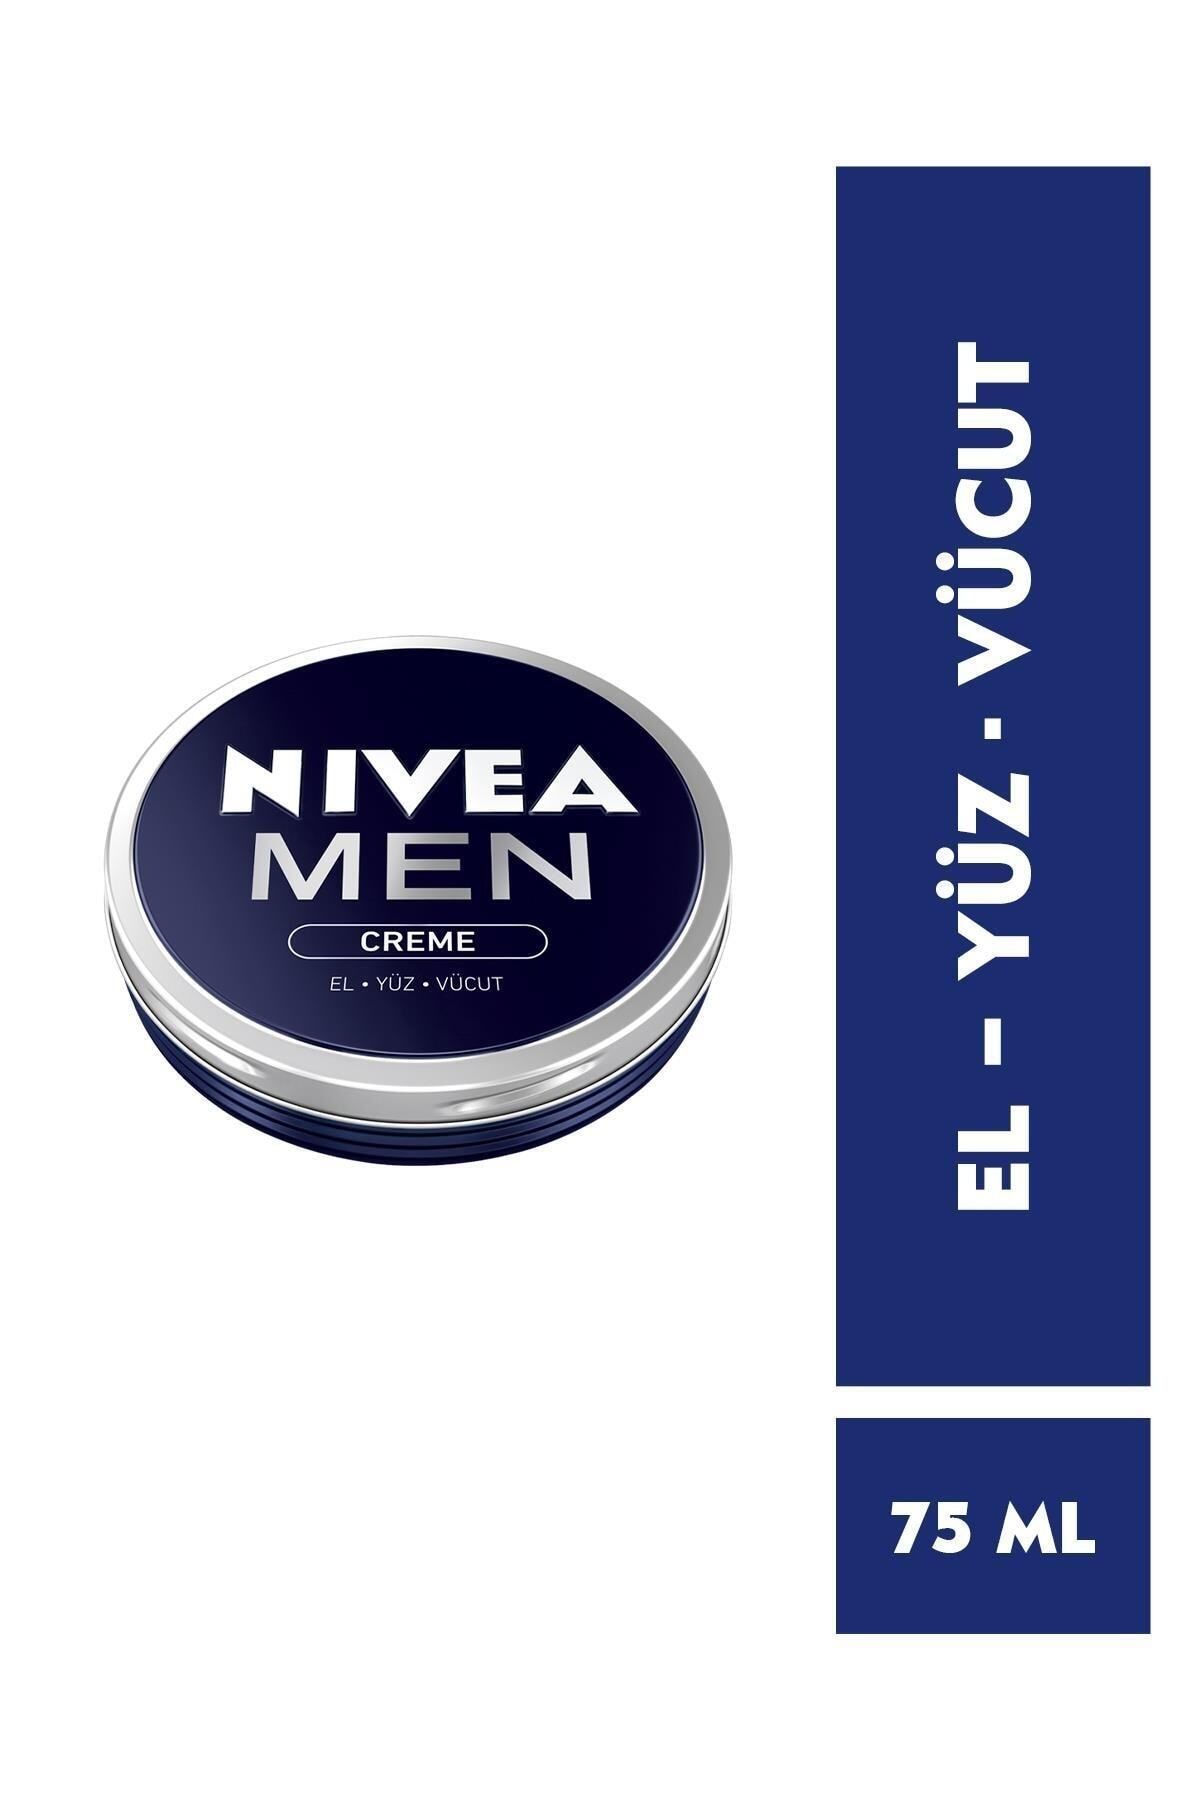 NIVEA Men Creme Erkek Bakım Kremi 75ml,El, Yüz ve Vücut Nemlendiric,Naturals Beauty--